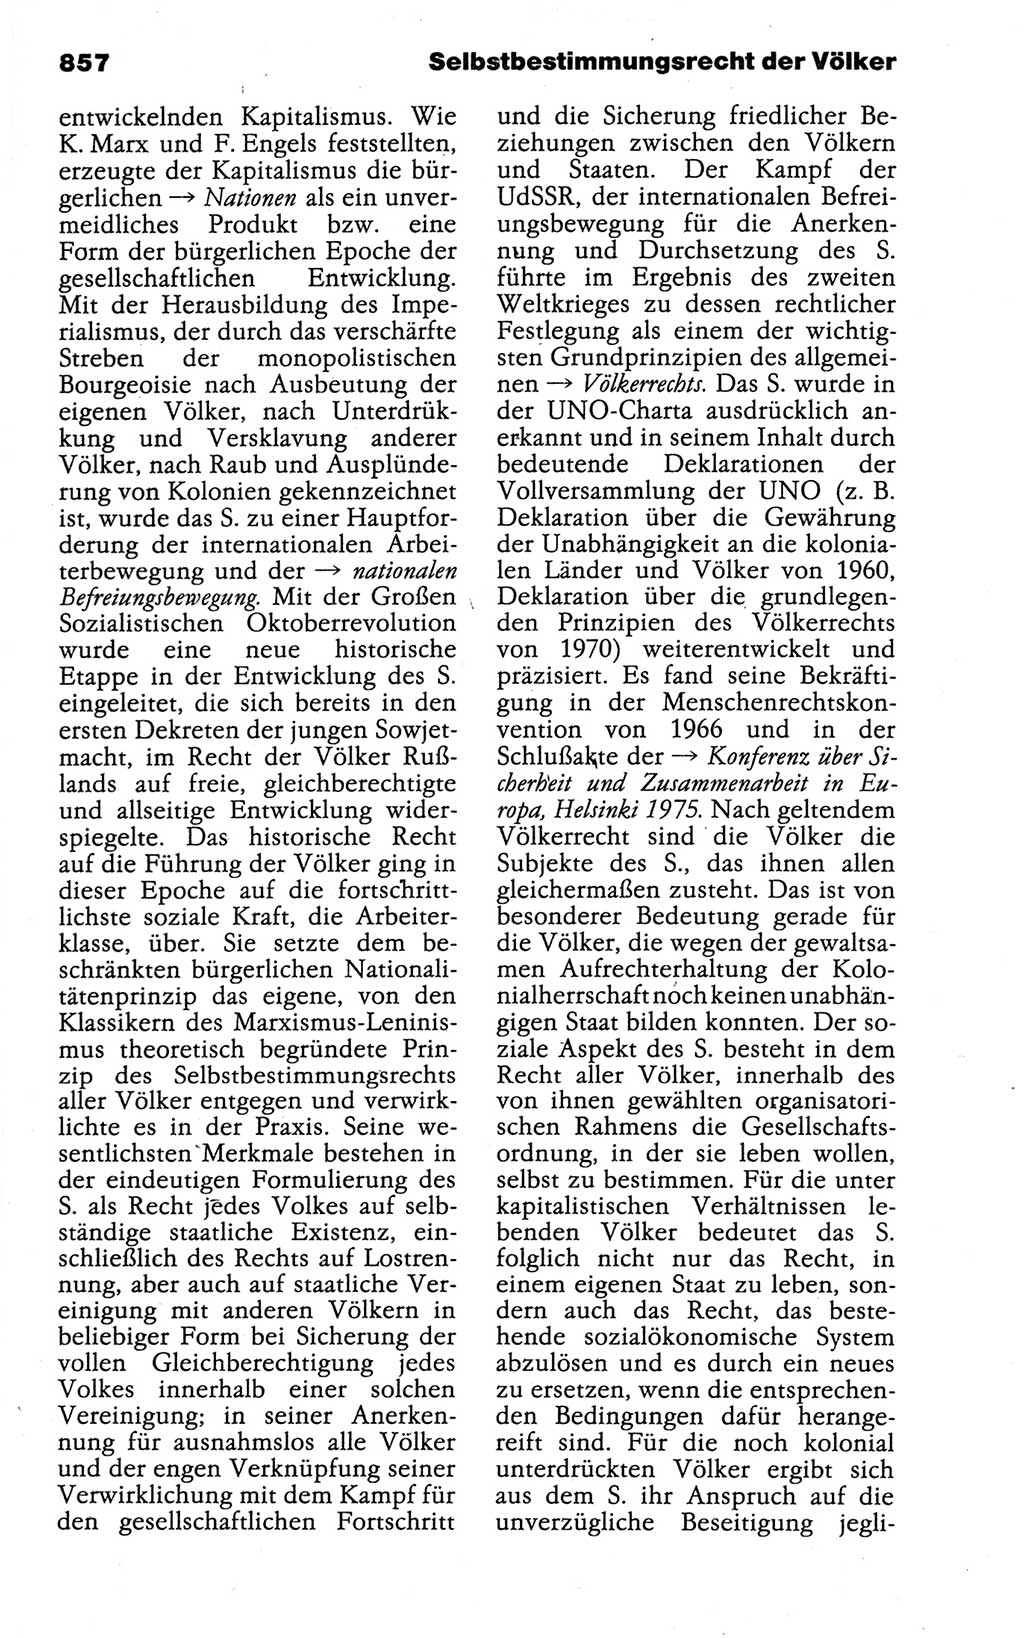 Kleines politisches Wörterbuch [Deutsche Demokratische Republik (DDR)] 1988, Seite 857 (Kl. pol. Wb. DDR 1988, S. 857)